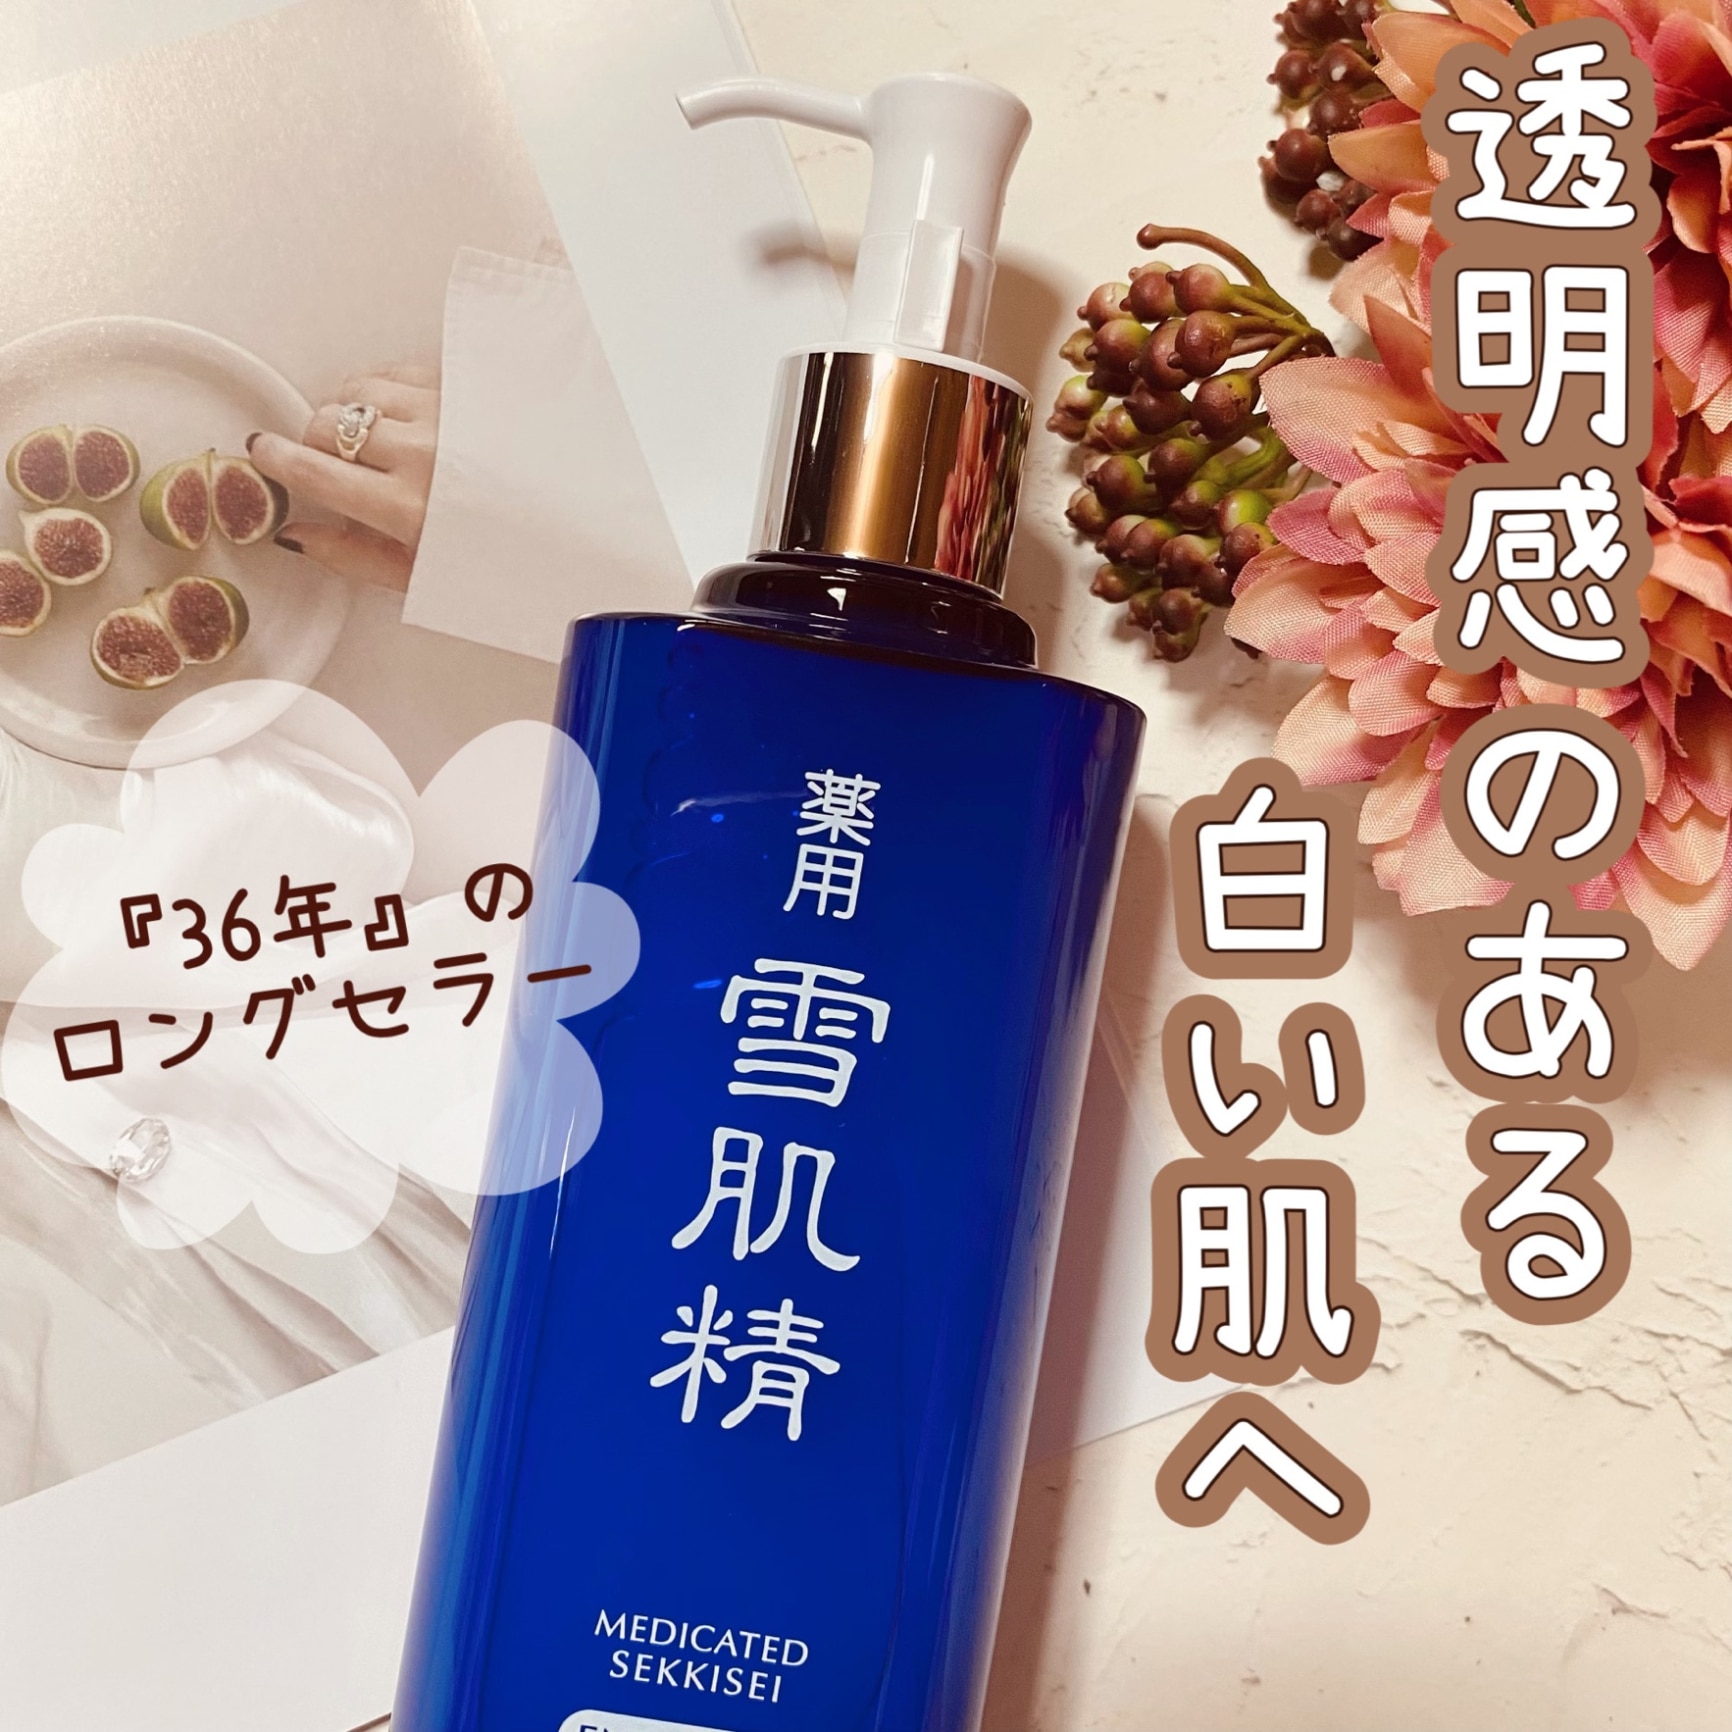 KOSE/コーセー 薬用 雪肌精 化粧水 乳液 1000ml セット - 化粧水 